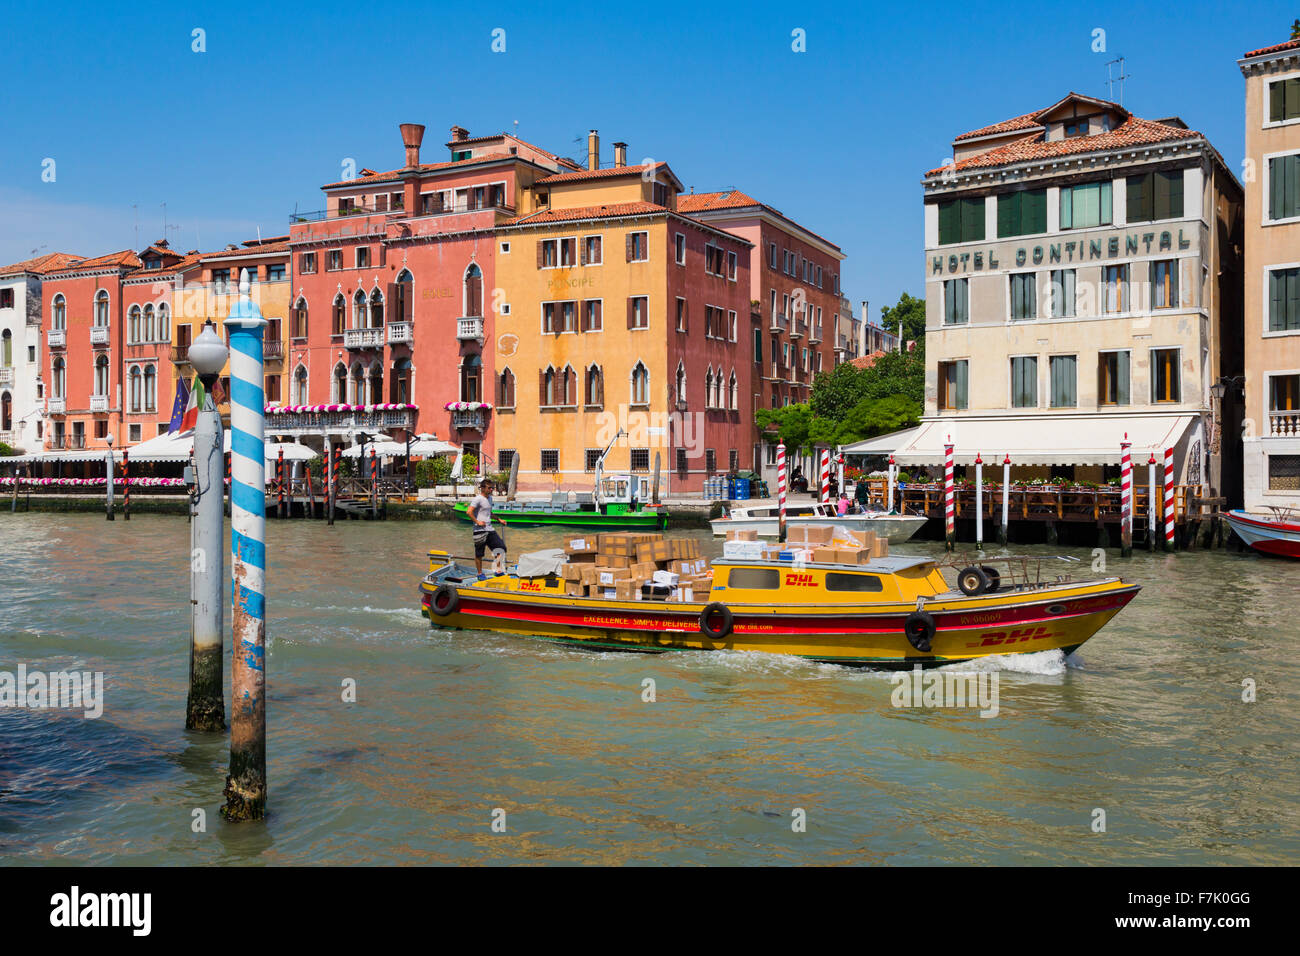 Venedig, Italien.  Ein DHL Kurier Schiff, beladen mit Paketen für Lieferung, Motoren auf dem Canal. Stockfoto